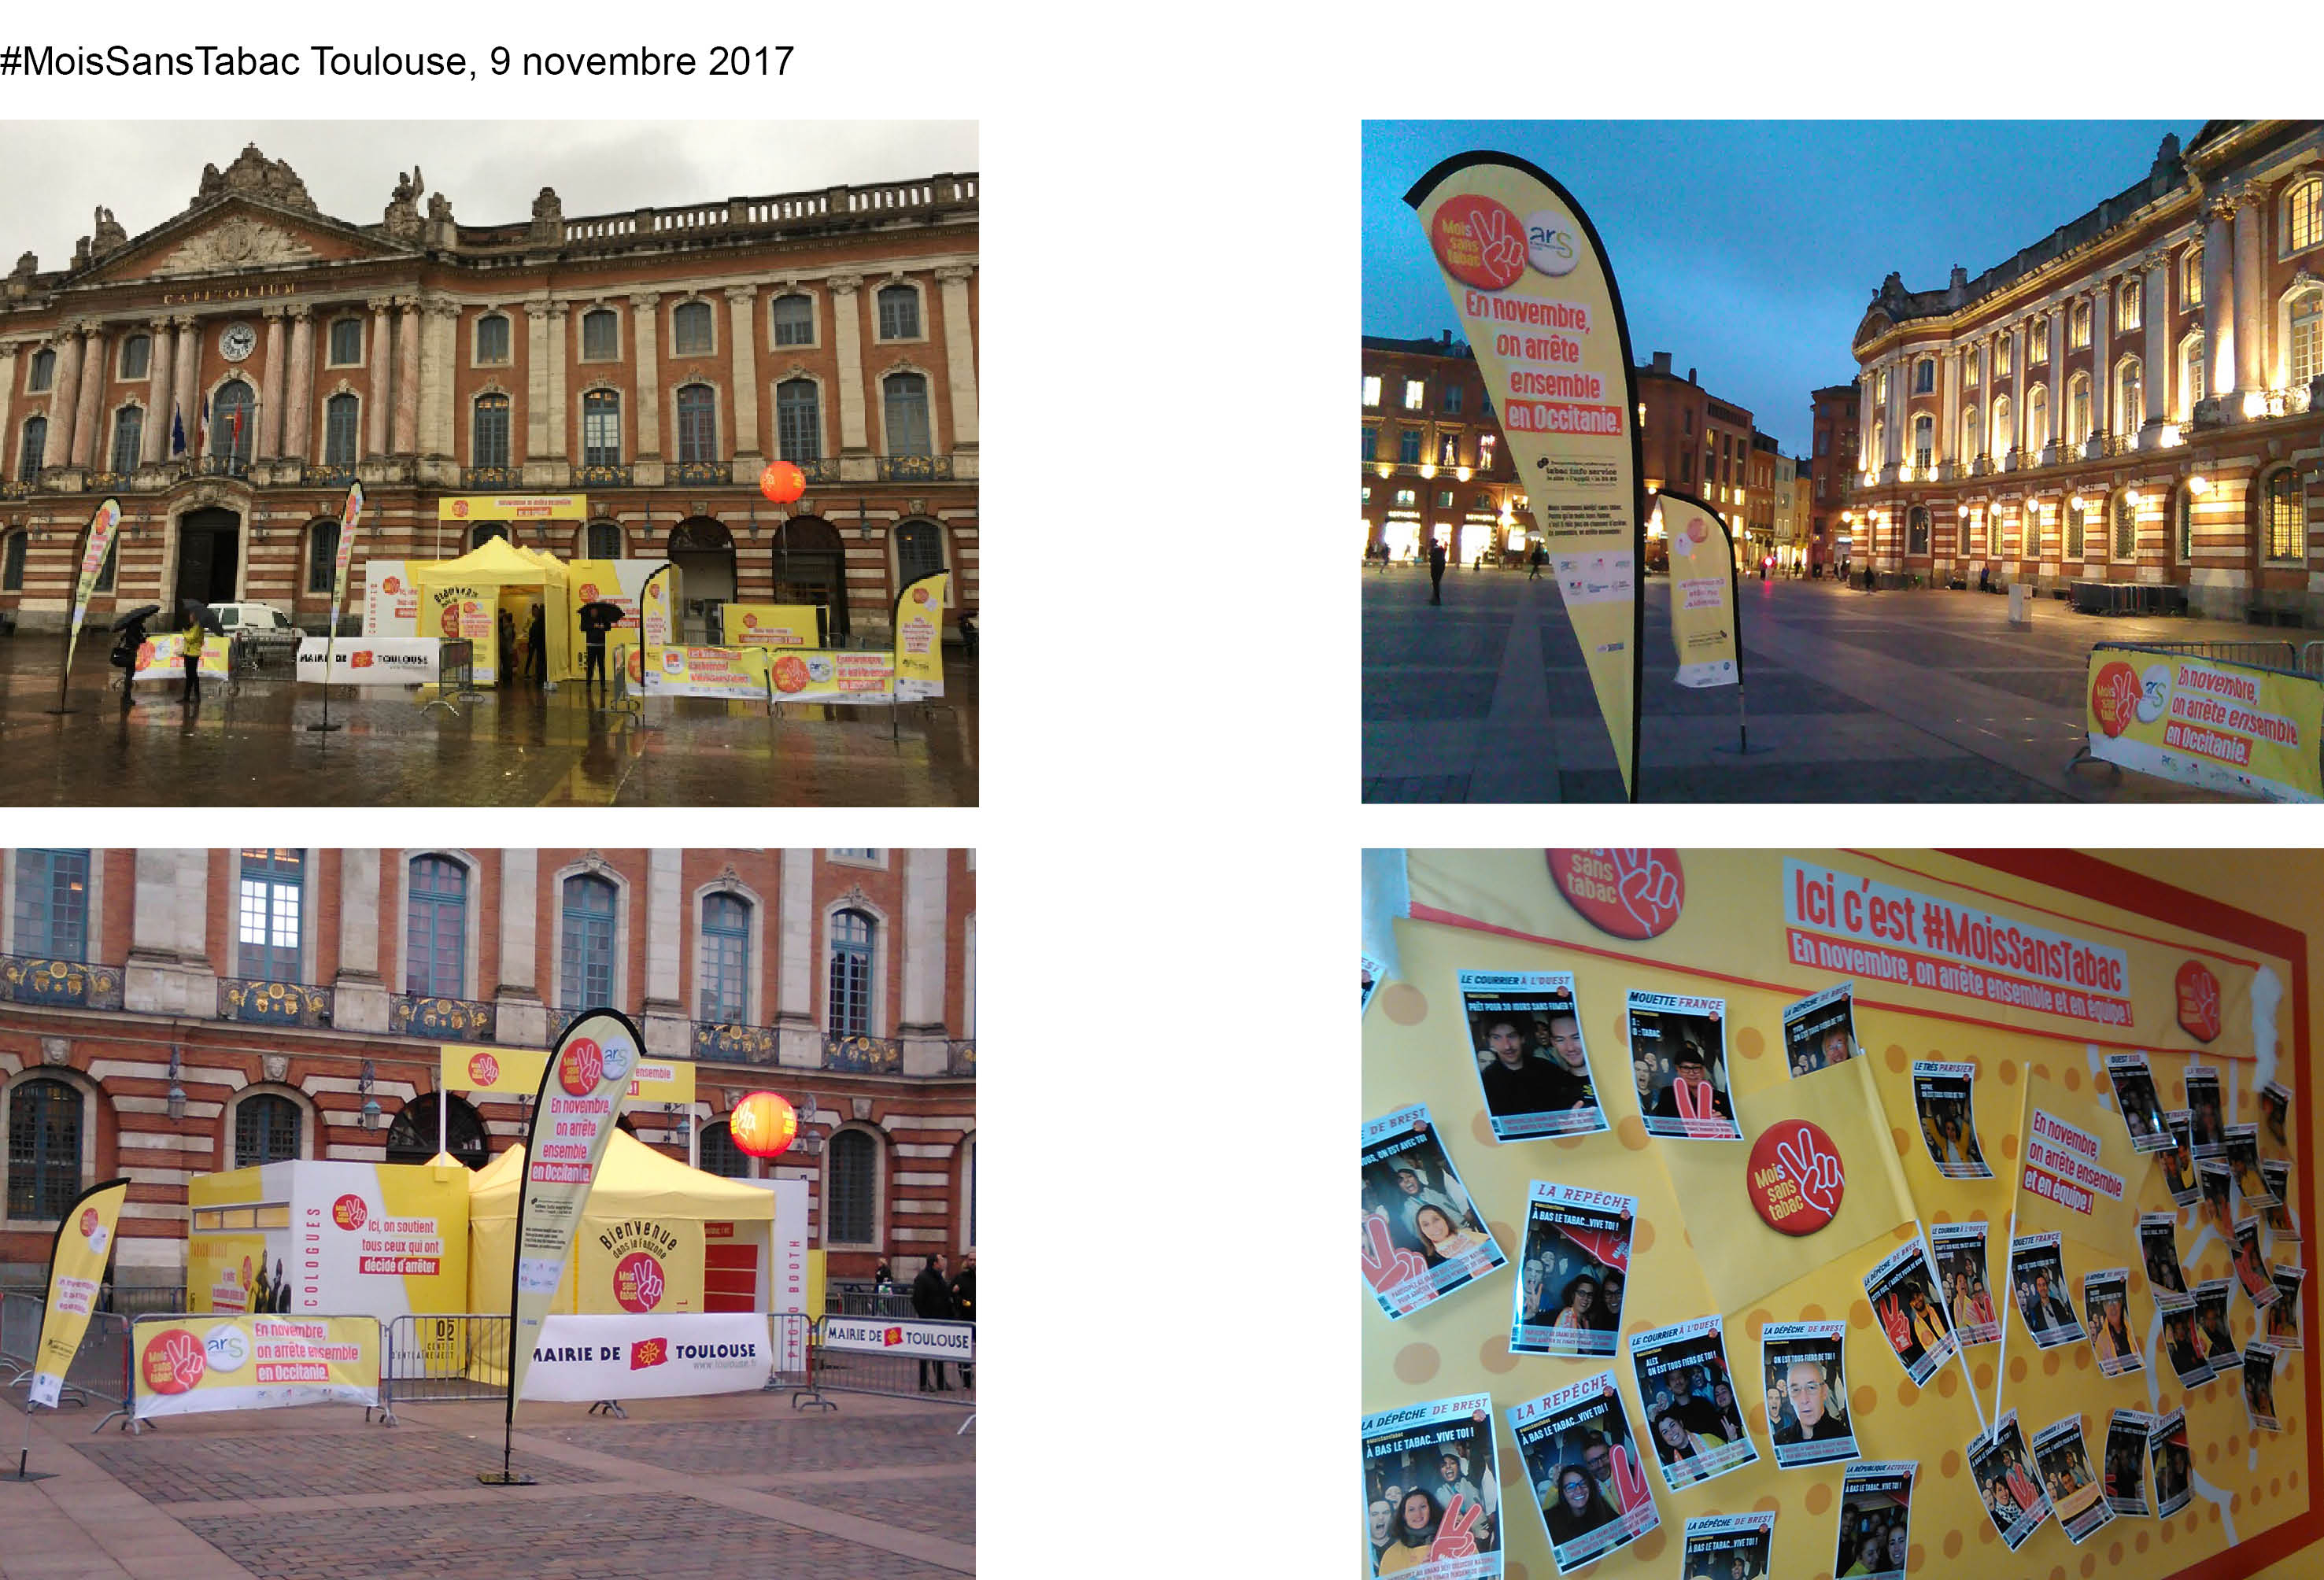 Photos #MoisSansTabac Toulouse 9 novembre 2017